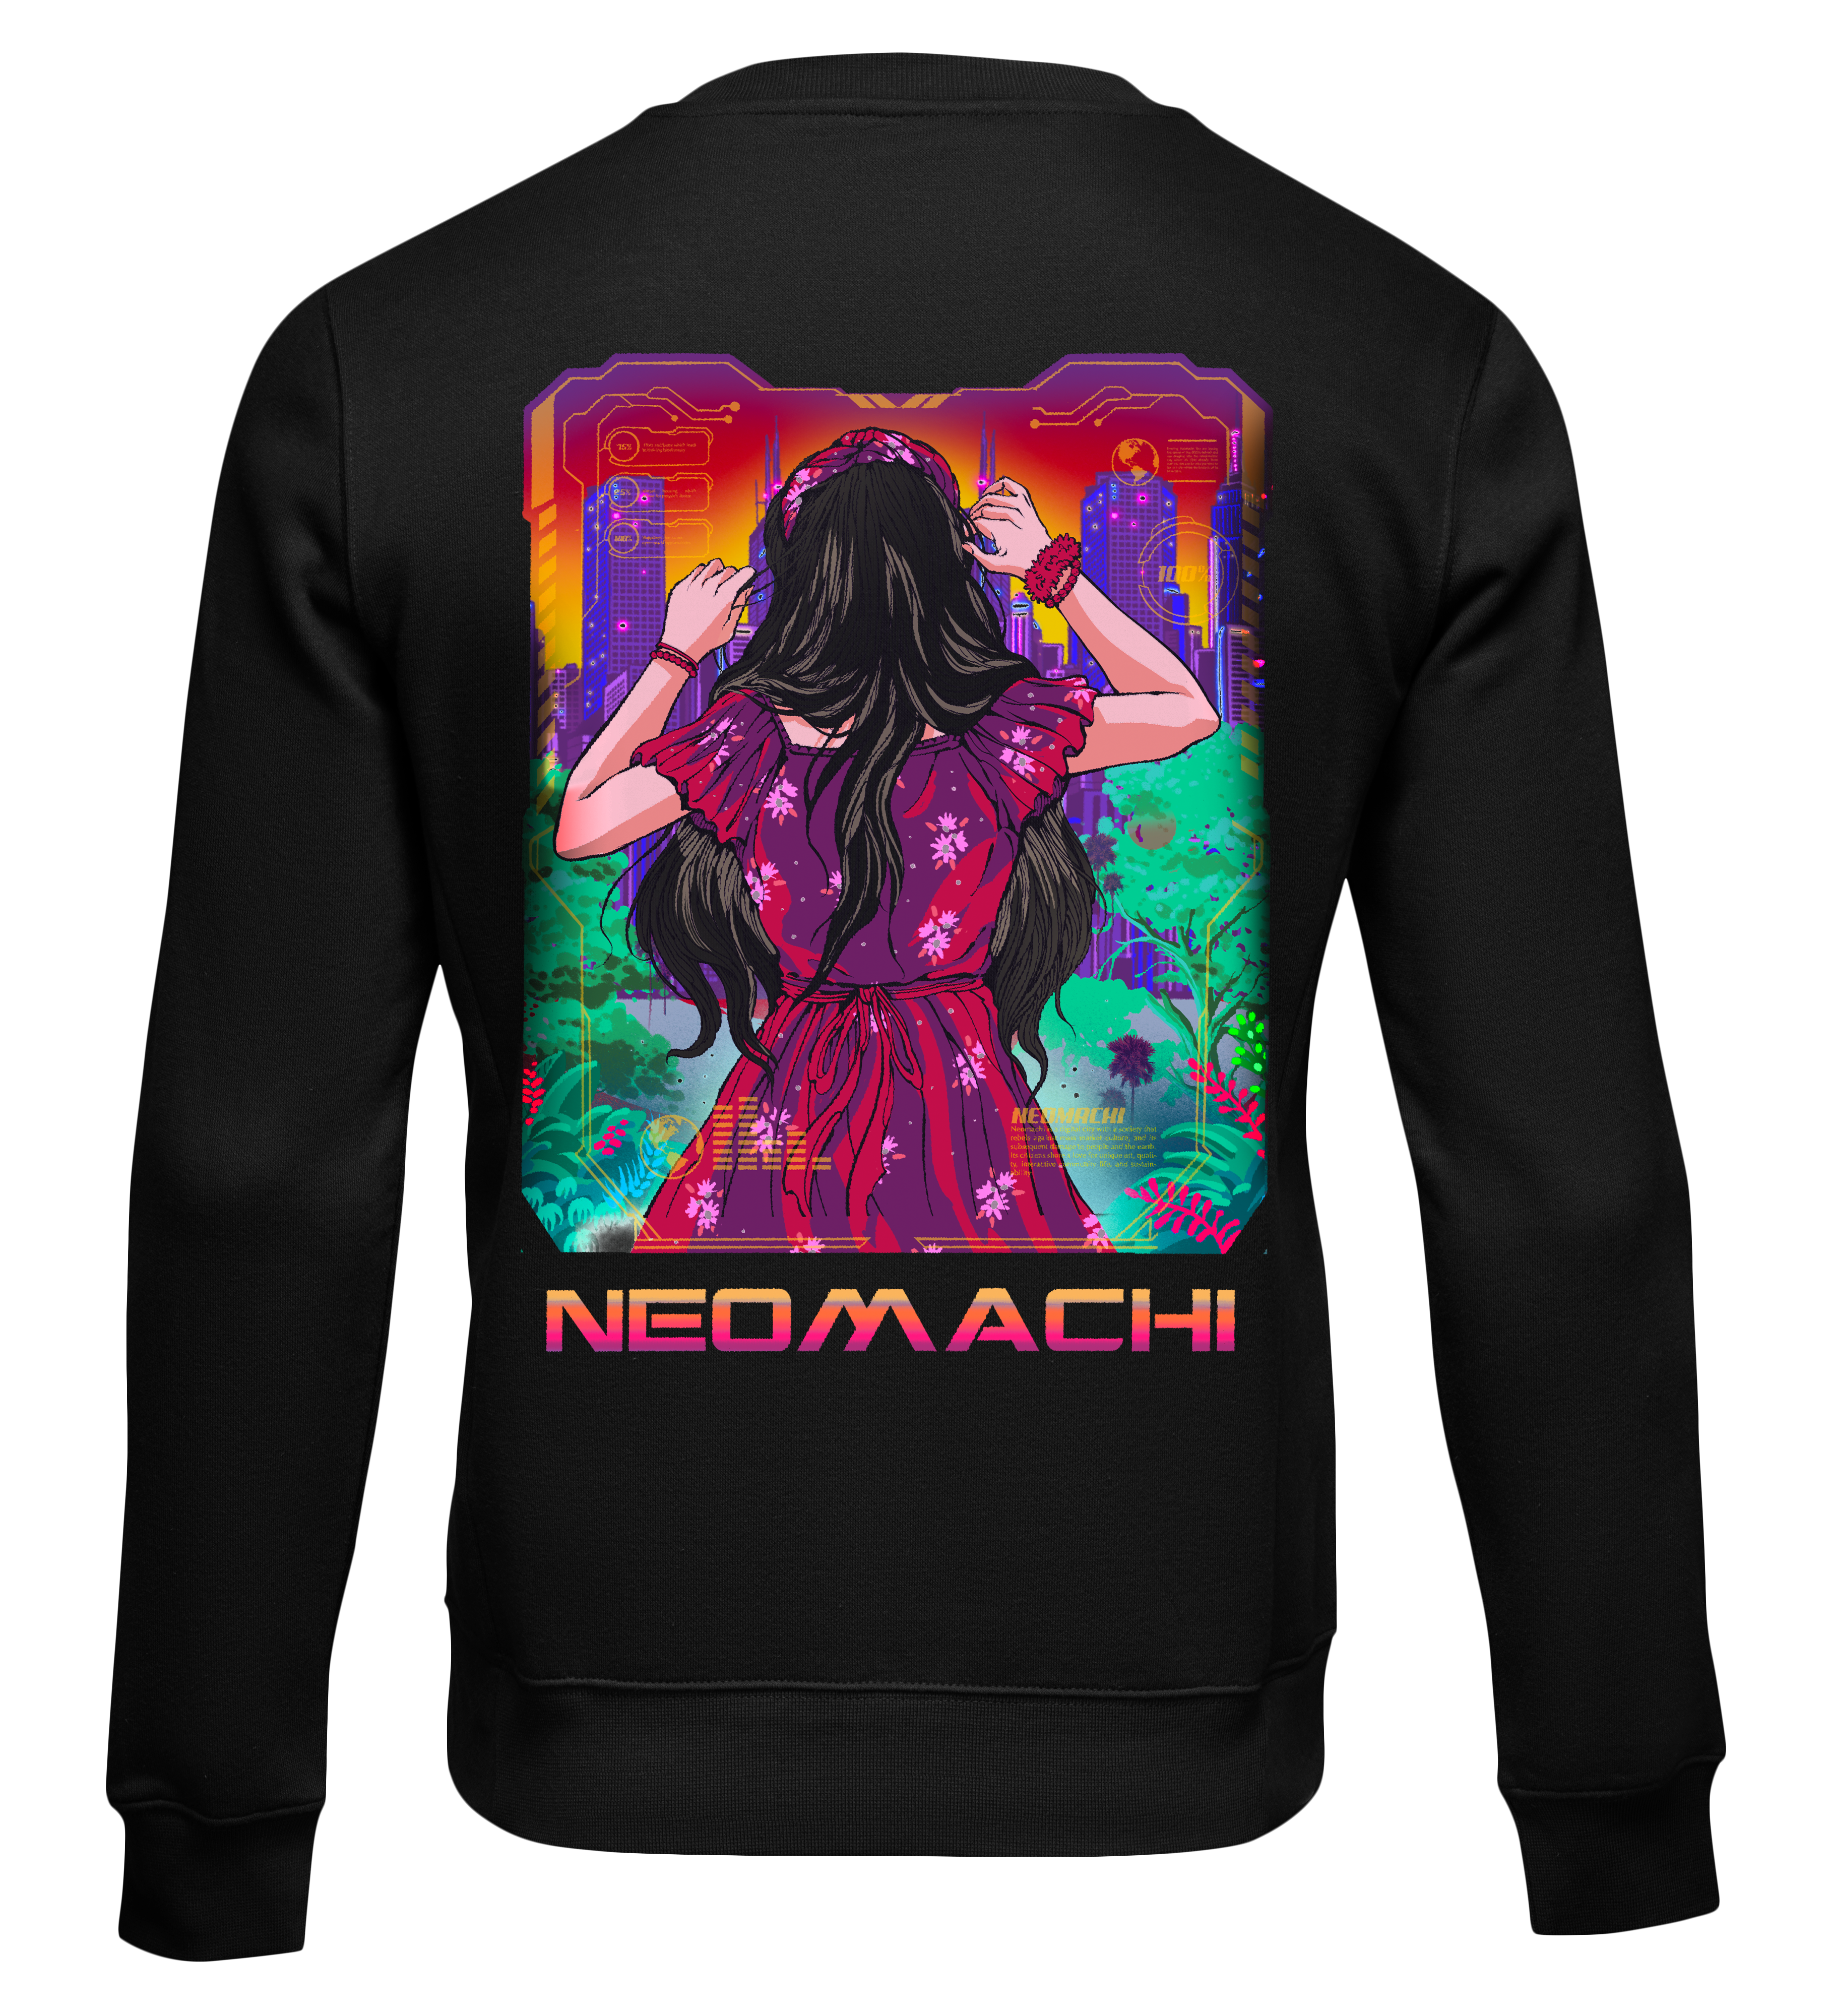 Nonfikushon: Sweater - Black - Black - cyberpunk sweaters - Neomachi